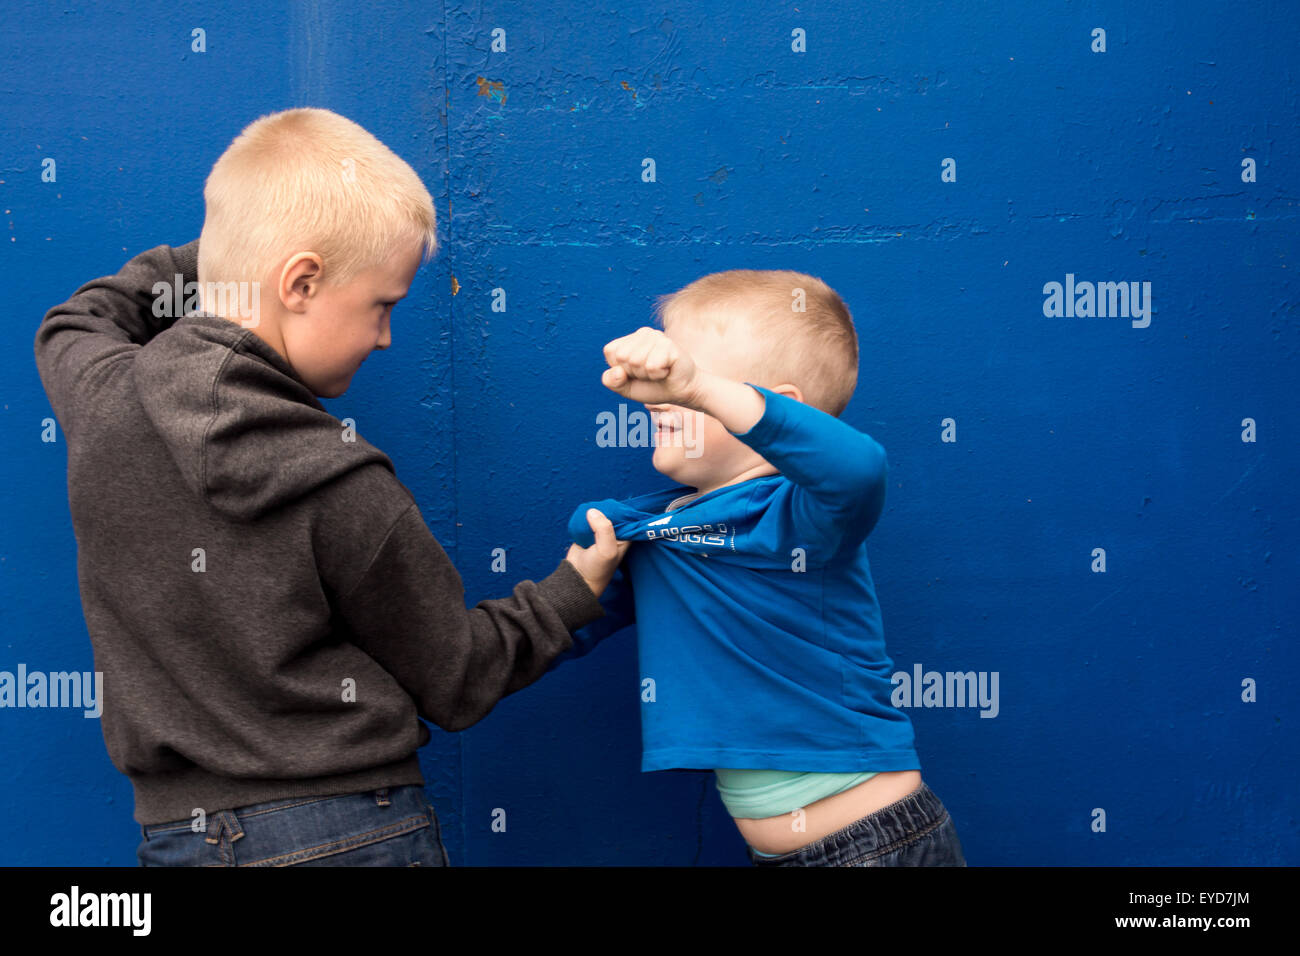 Kinder Kampf zwischen zwei böse aggressive Brüder (Kinder, jungen) Stockfoto